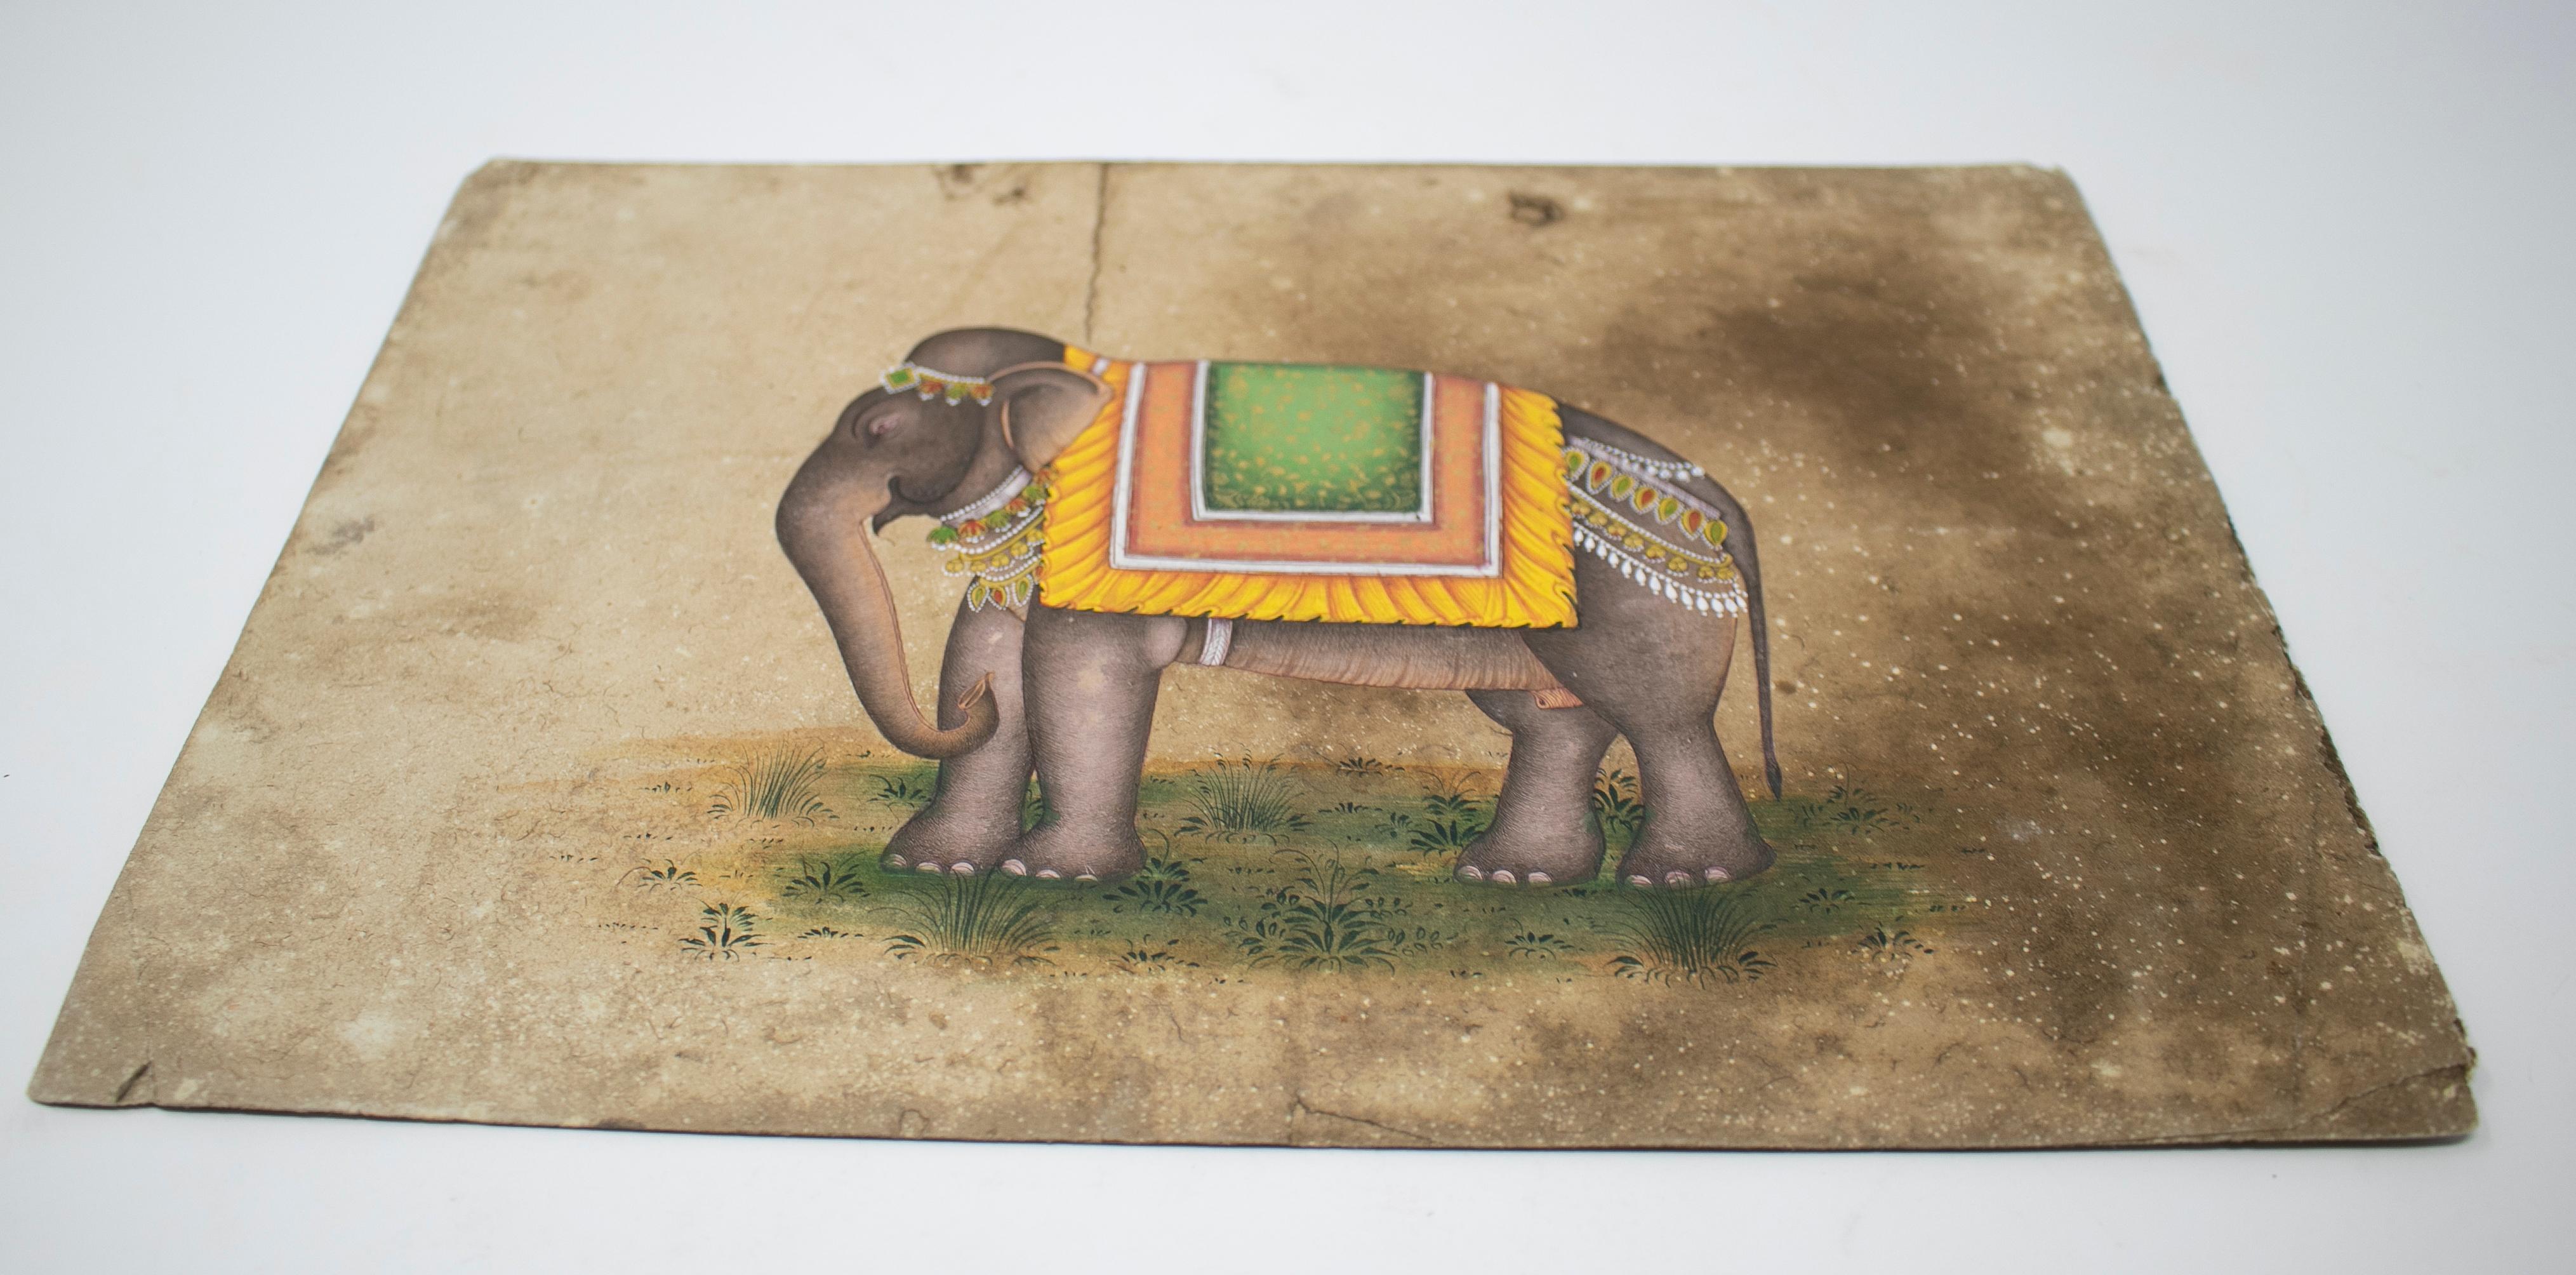 dessin sur papier indien des années 1970 représentant un éléphant, faisant partie d'une grande collection privée.